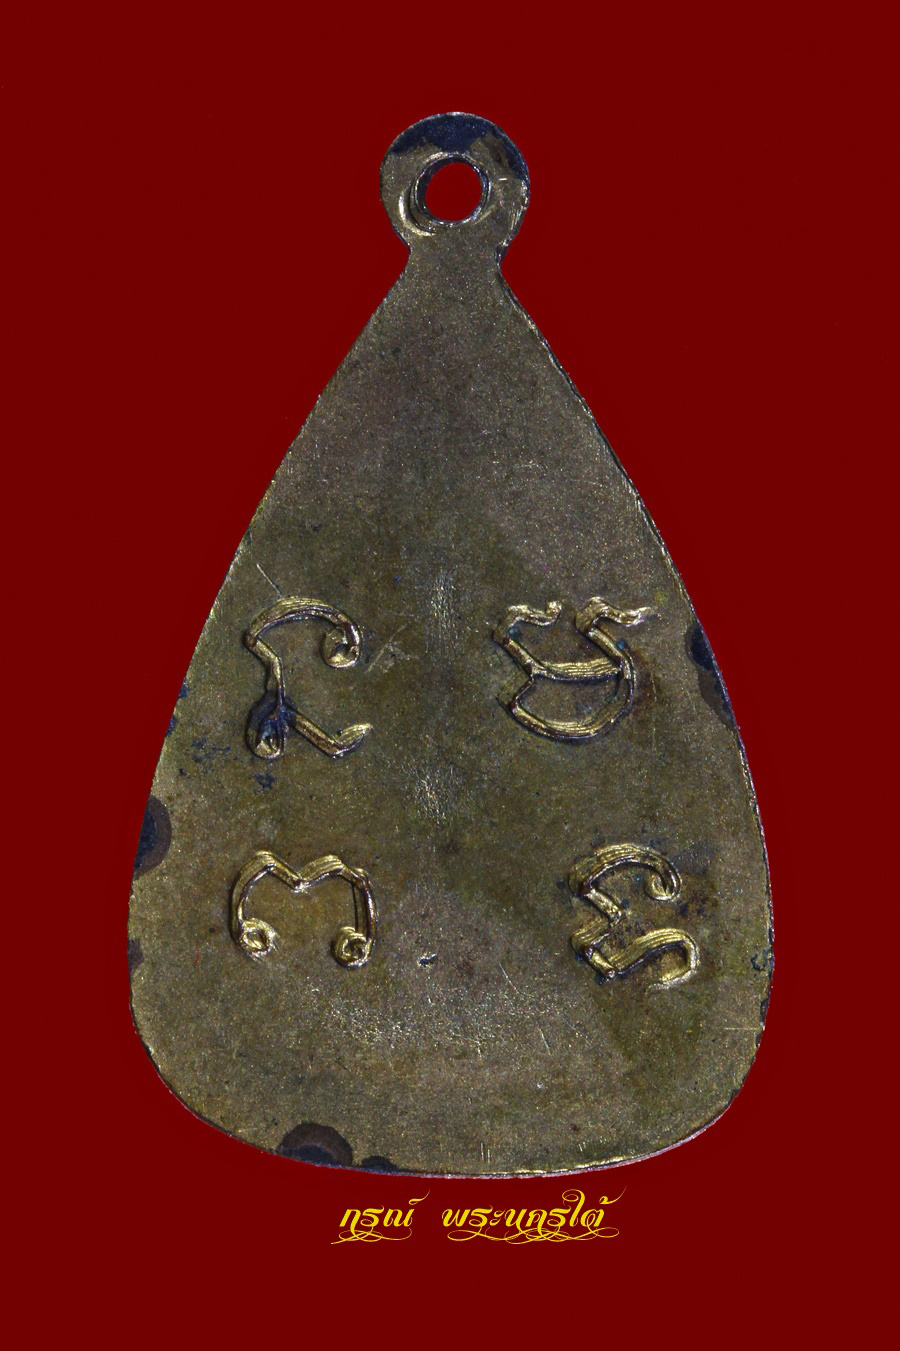 เหรียญพระกลีบบัว หลวงพ่อโต วัดกัลยาณมิตร ธนบุรี กทม. เนื้อทองแดง กะไหล่ทอง หลวงพ่อเส่ง ปลุกเสก ปี 2495